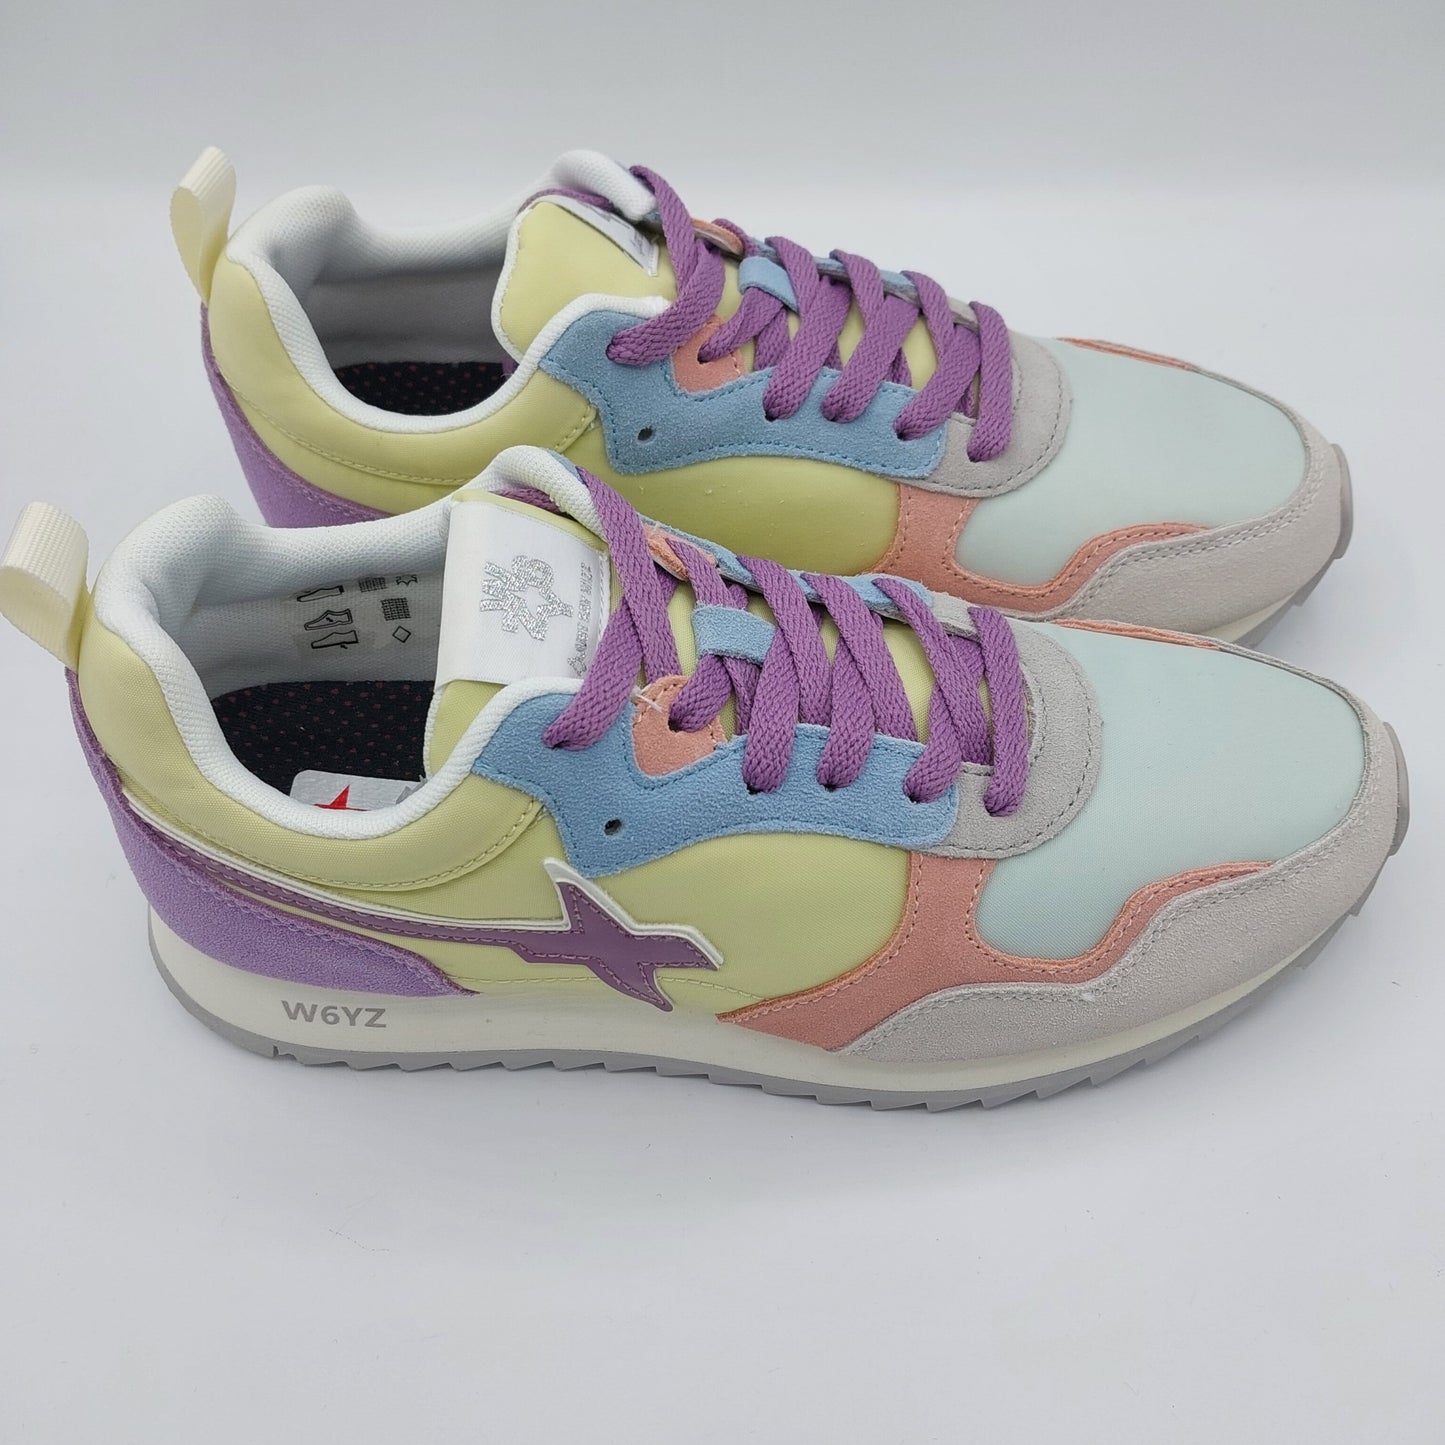 Sneakers Wizz colori pastello